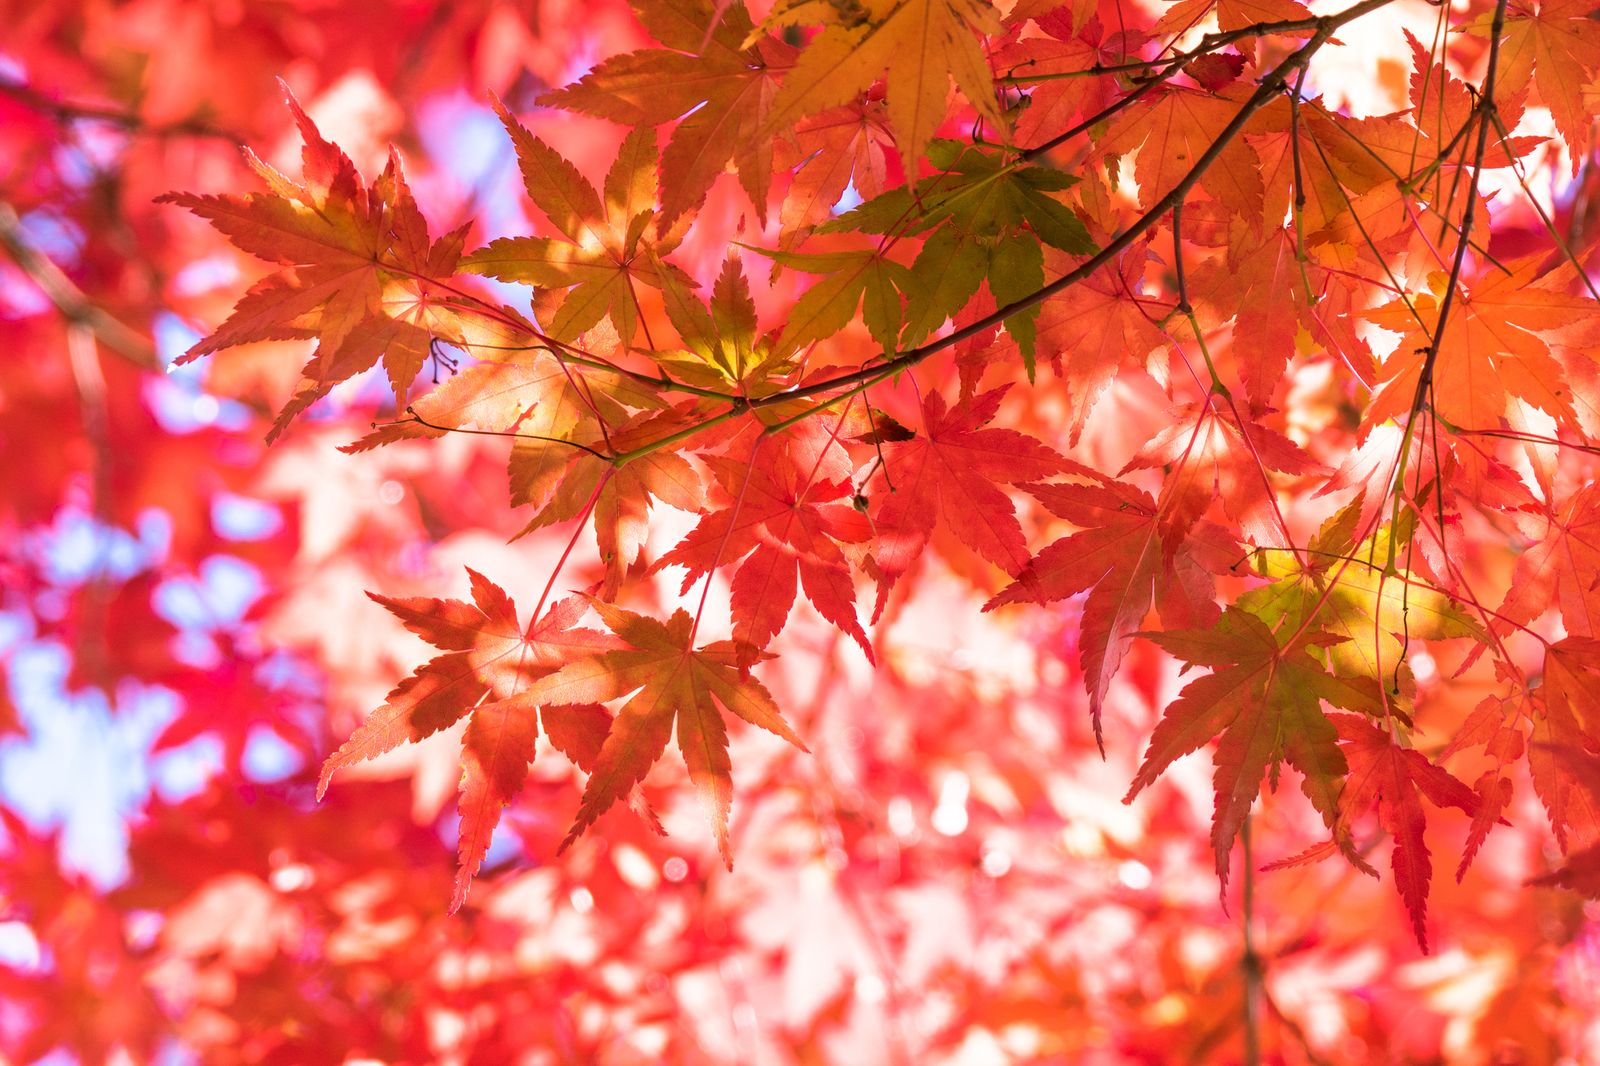 メイン画像 広尾でおしゃれに秋を感じる 超穴場紅葉スポット 有栖川宮記念公園 とは Retrip リトリップ